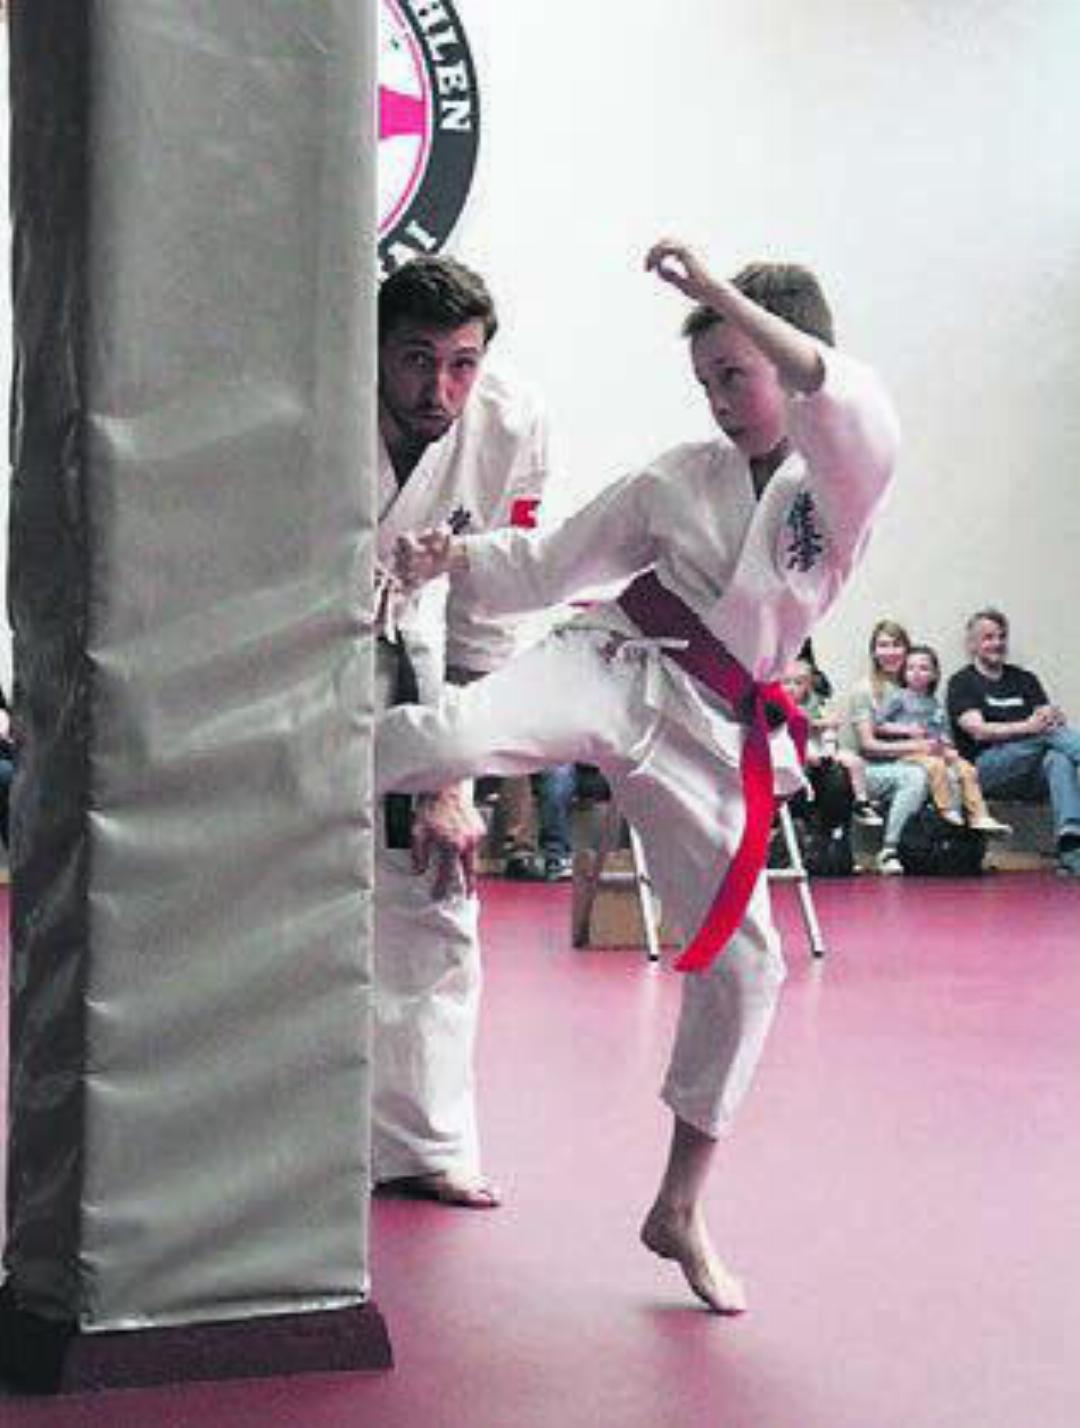 Karatekas von Jung bis Alt präsentierten ihre Fähigkeiten. Bild: jl